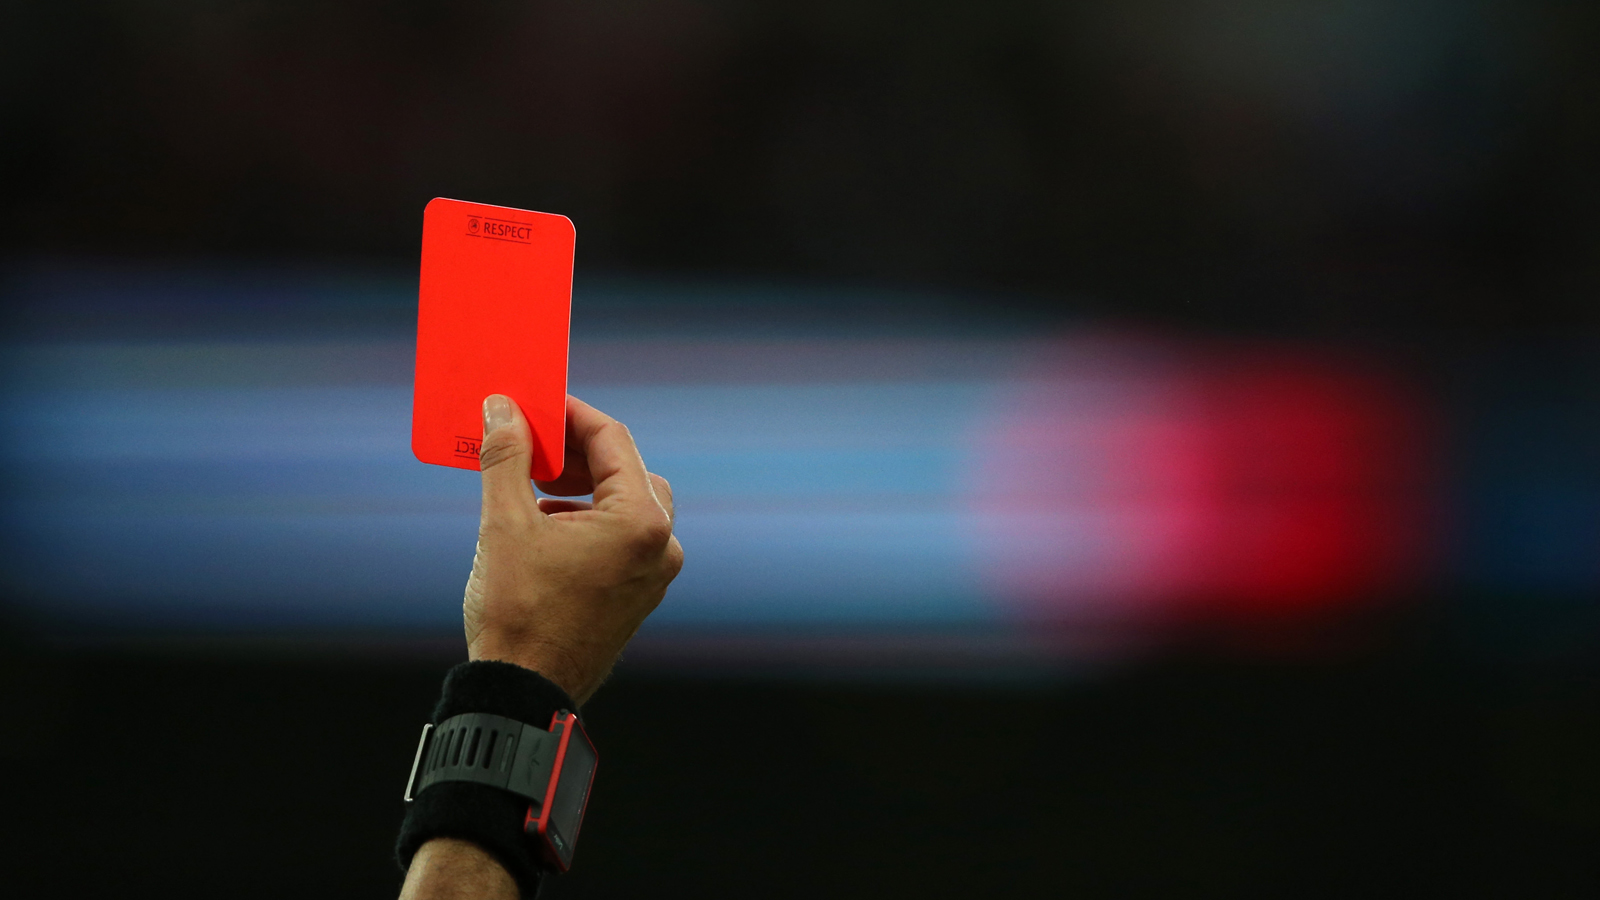 IFAB คลอดกฎแจกใบแดงผู้เล่นจงใจไอใส่คนอื่น ฟุตบอลรายการอื่นๆ  